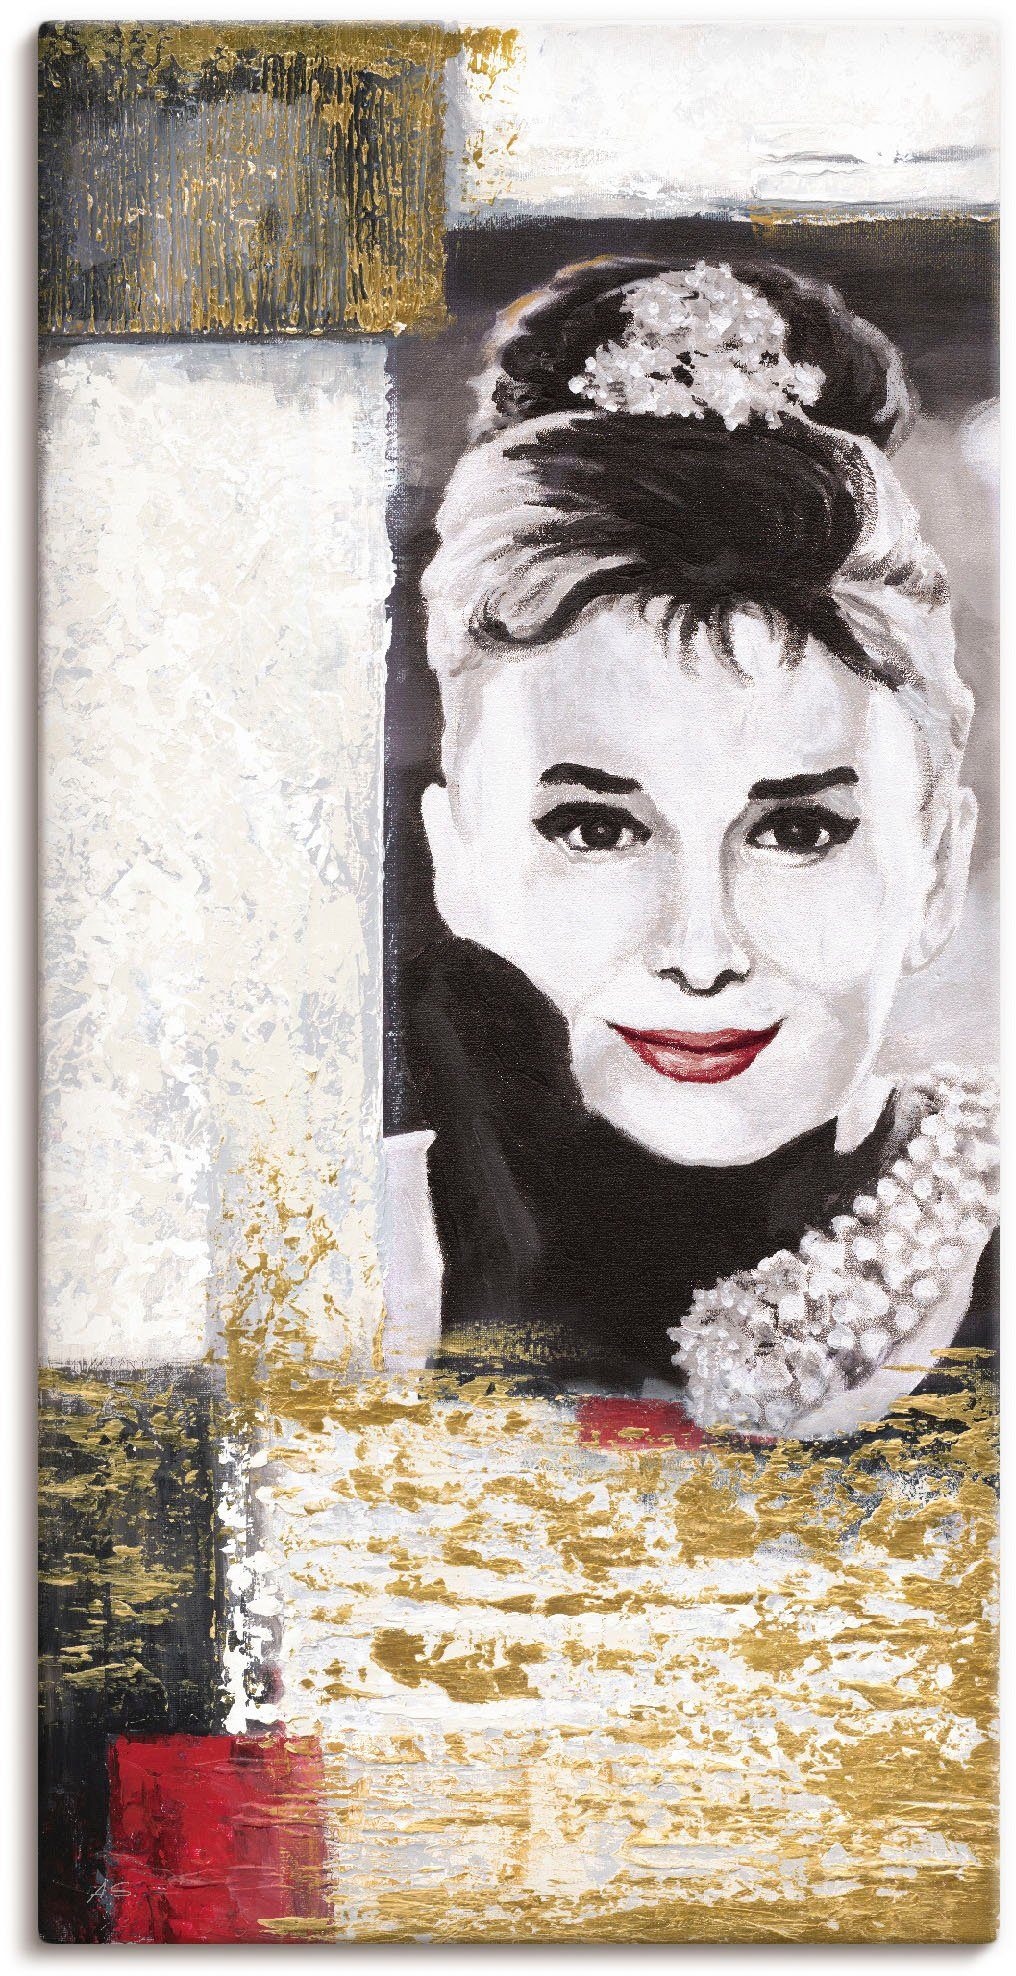 Artland Artprint Hollywood legenden VI - Audrey Hepburn in vele afmetingen & productsoorten -artprint op linnen, poster, muursticker / wandfolie ook geschikt voor de badkamer (1 st